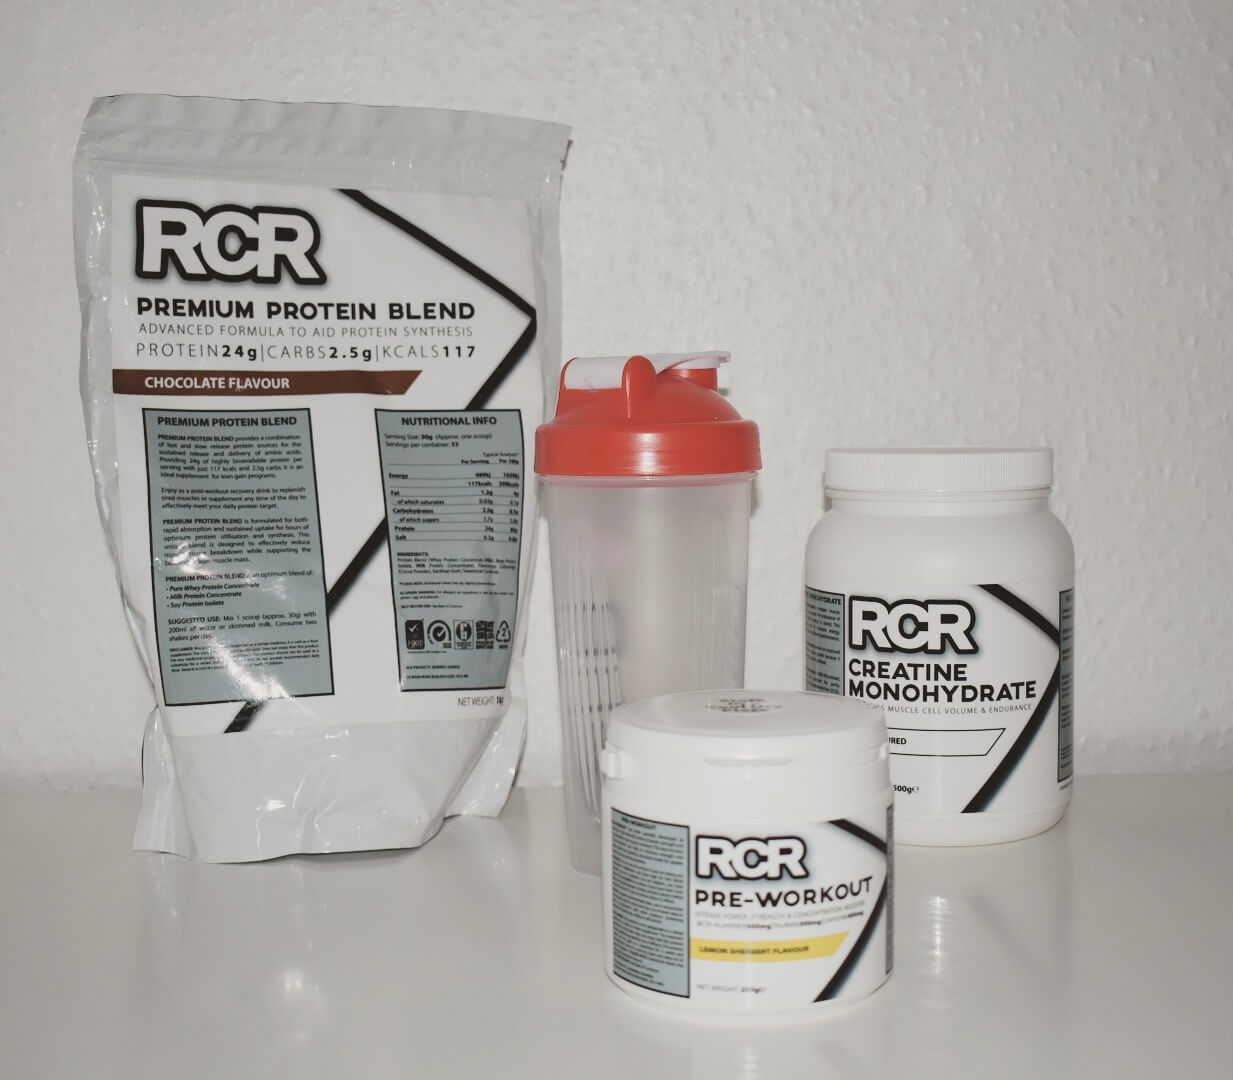 RCR nutrition